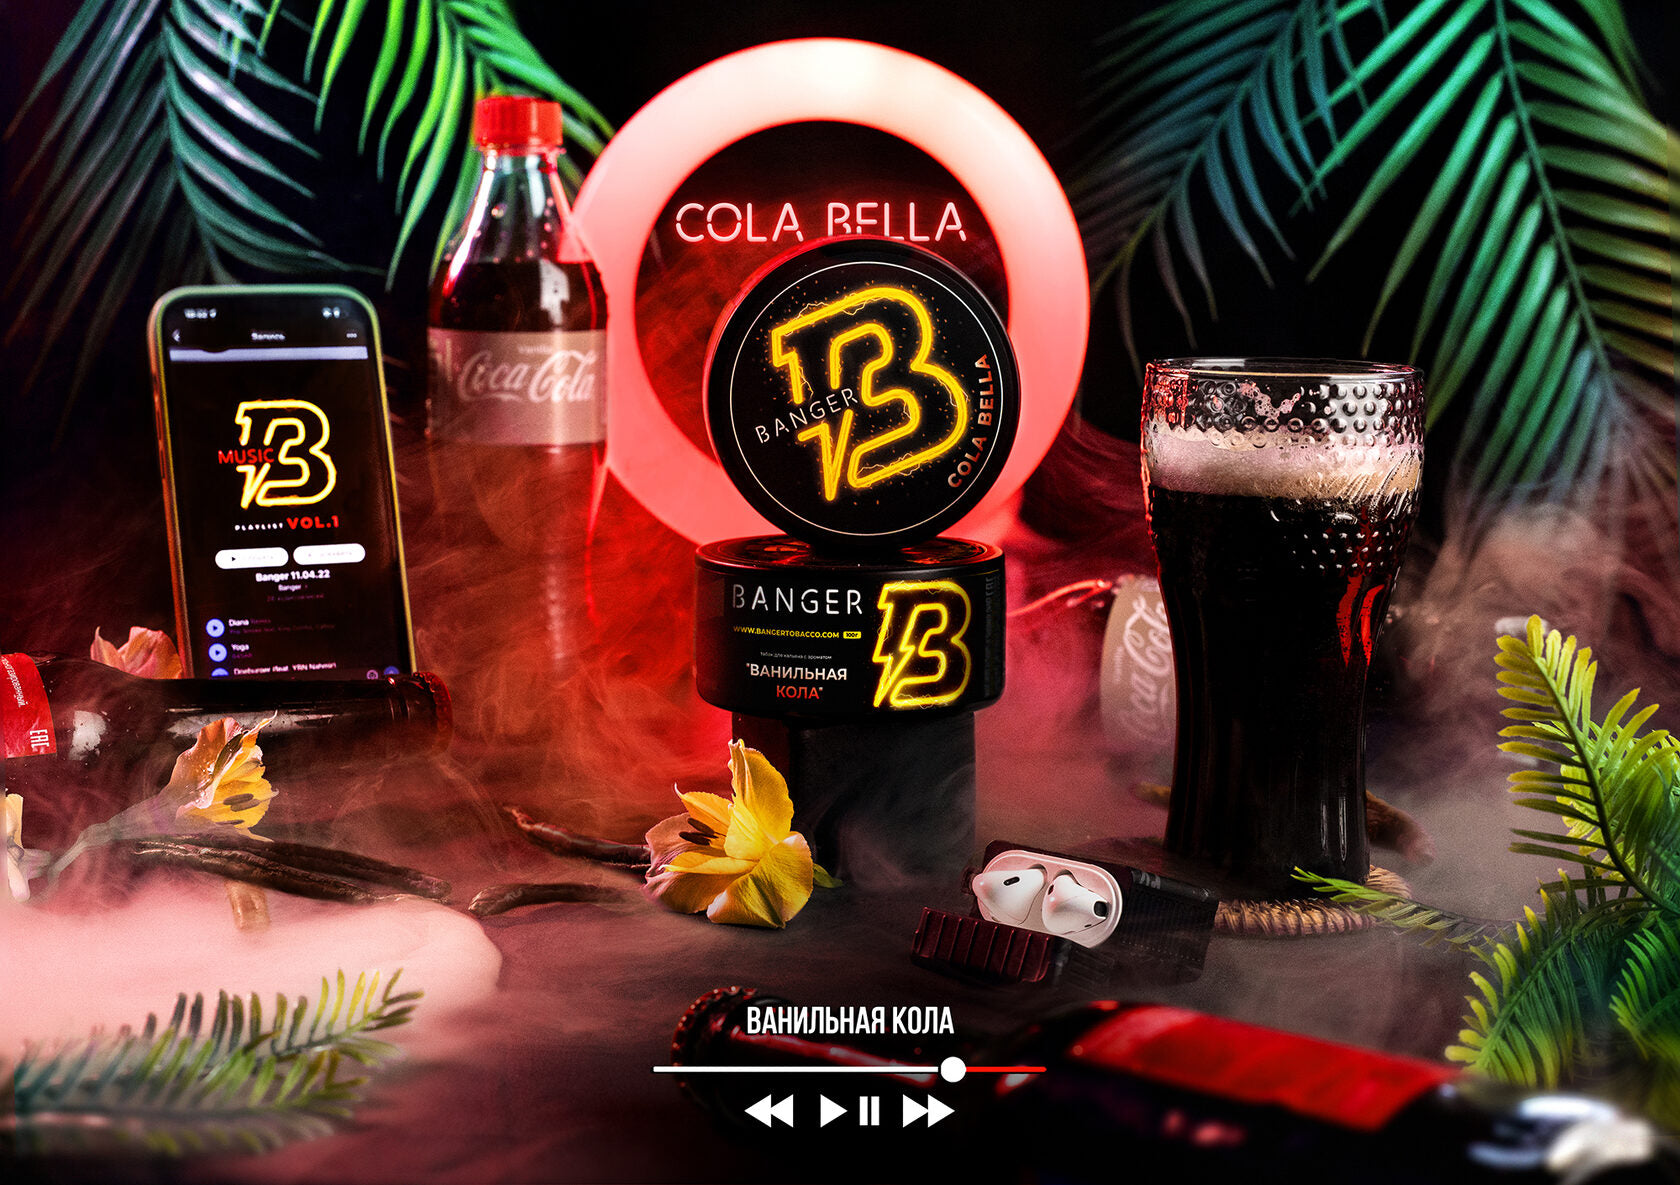 Banger Cola Bella 100G - Smoxygen